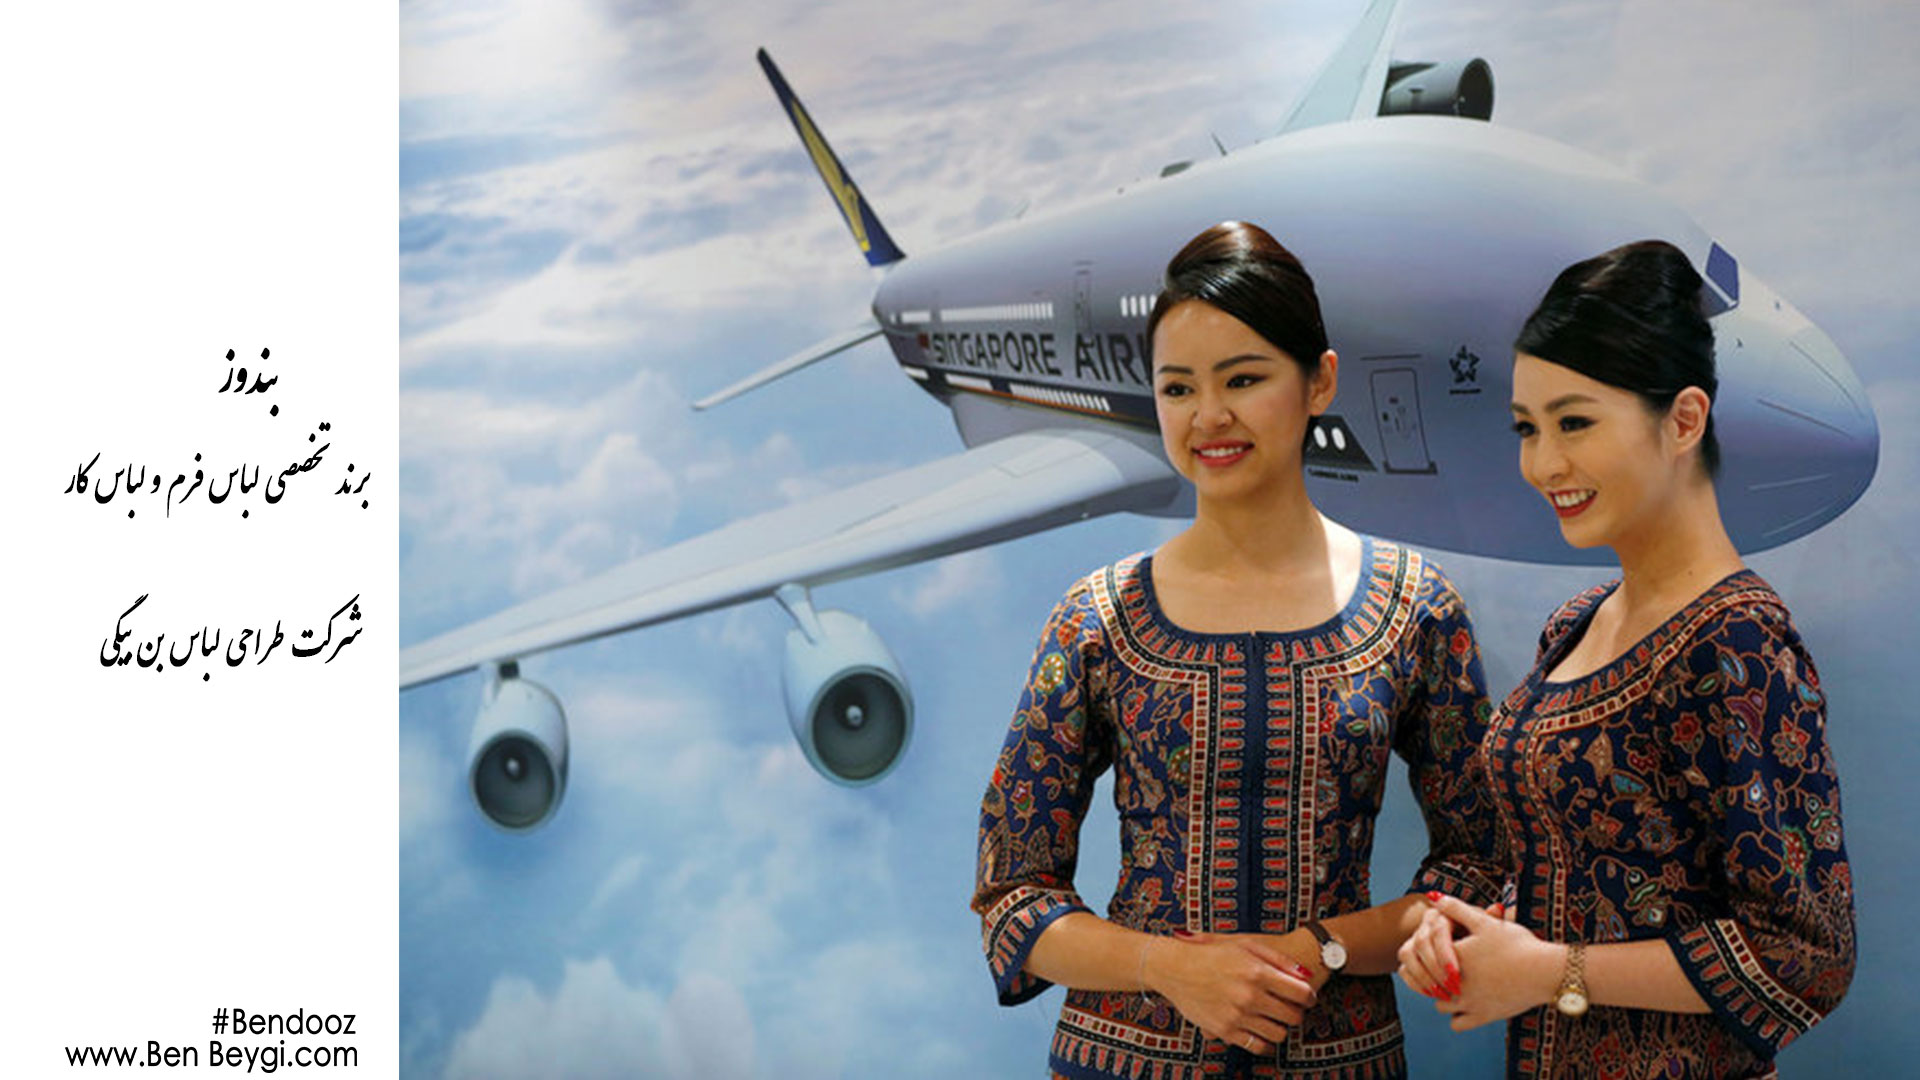 معرفی پوشش(استایل) شرکت های هواپیمایی و ریلی و آژانس های مسافرتی هواپیمایی سنگاپور با بن بیگی